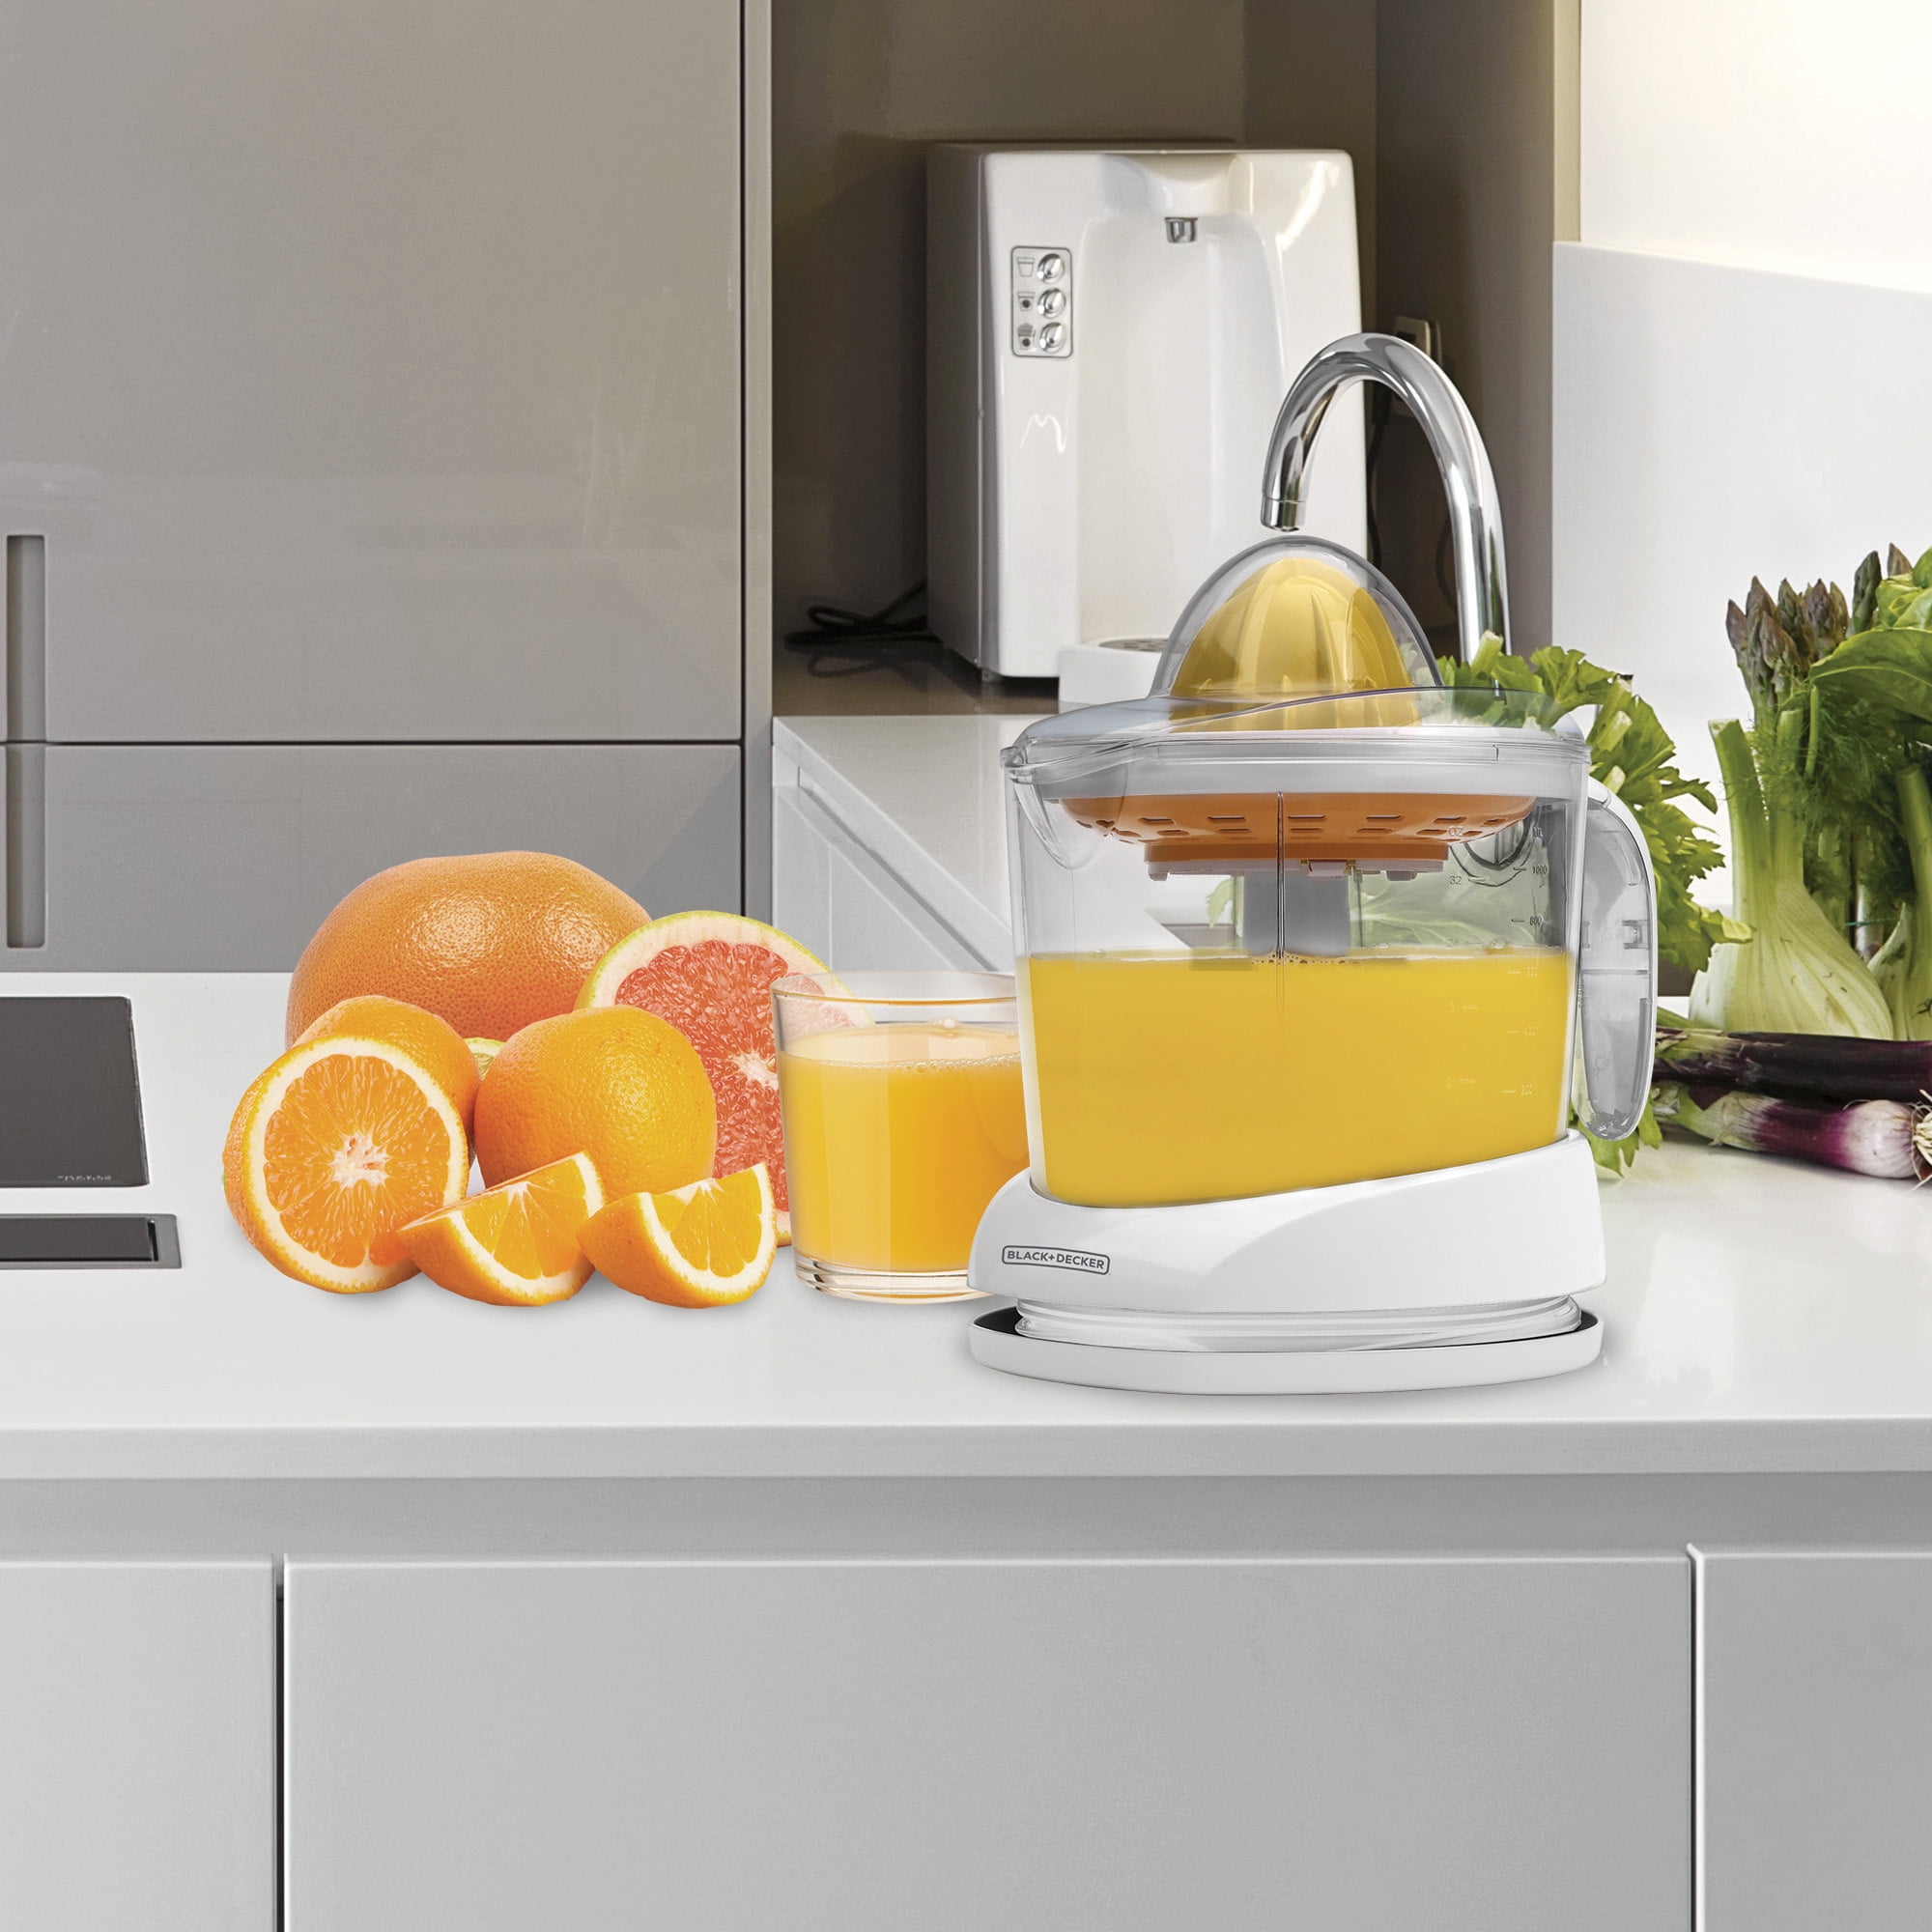 Black & Decker Home Citrus Orange Juicer Kitchen Appliance White CJ600W